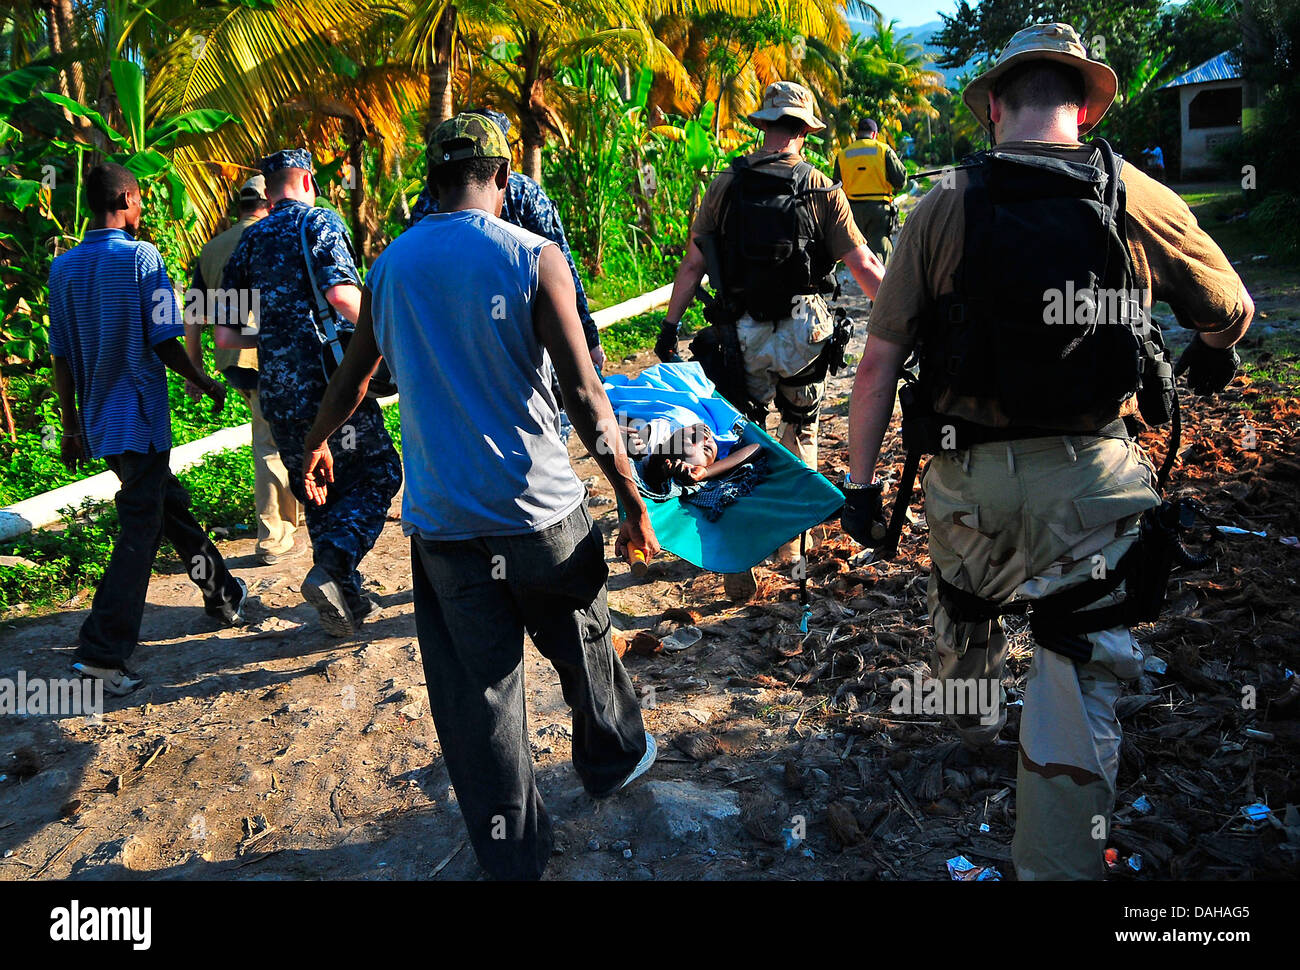 Noi marinai di trasportare un ferito ragazza haitiana per un evacuazione medica a seguito di un forte terremoto che ha ucciso 220.000 persone Gennaio 22, 2010 a Port-au-Prince, Haiti. Foto Stock